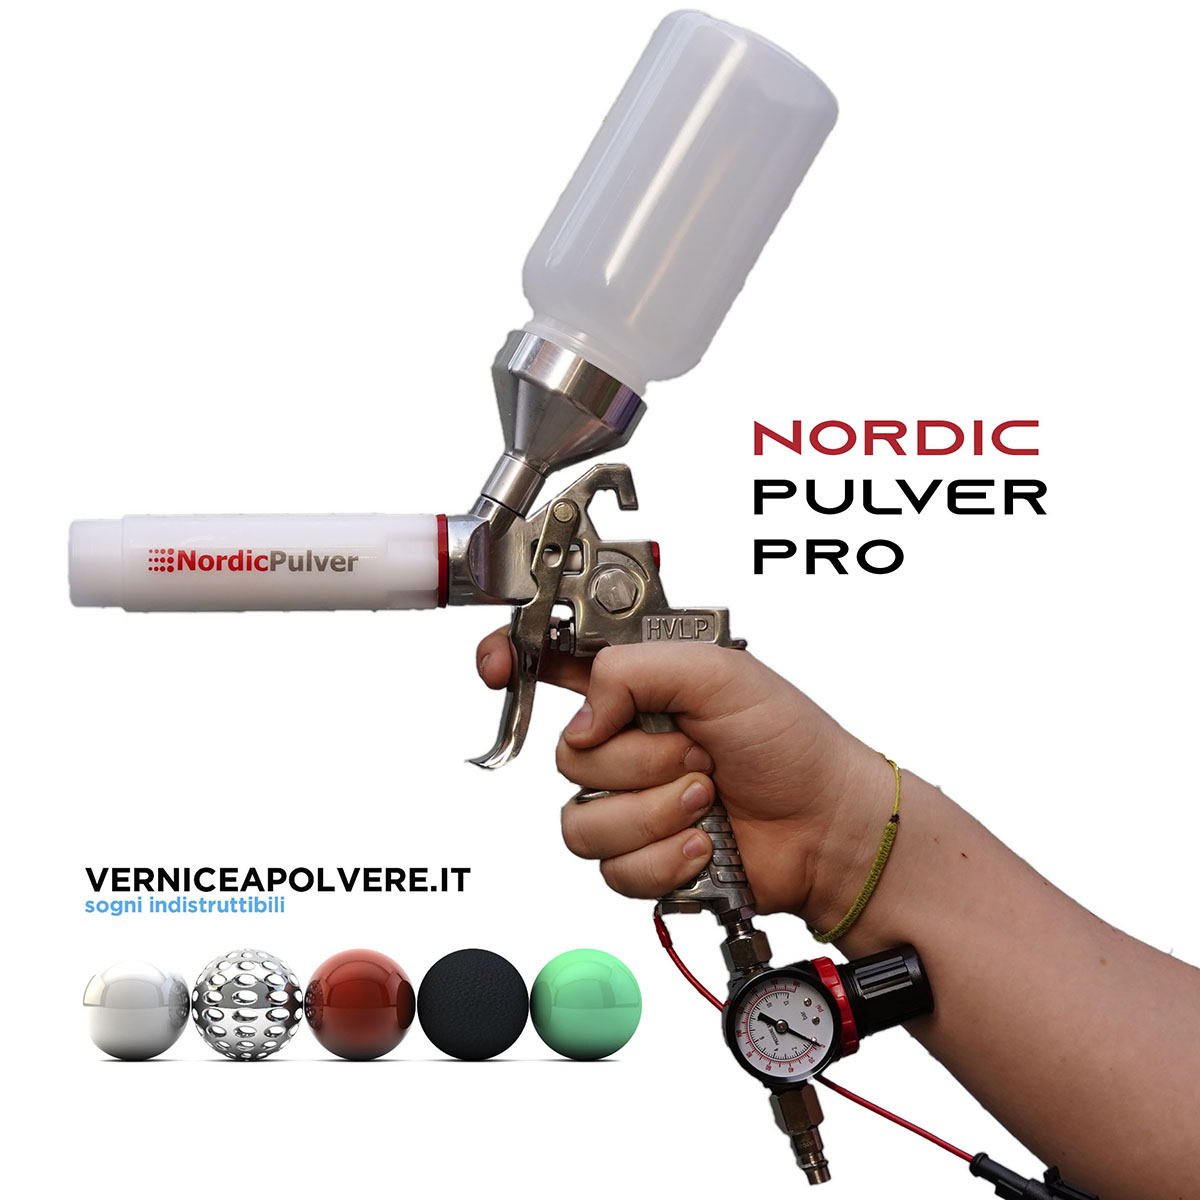 Pistole ed accessori : Pistola per verniciatura NordicPulver PRO